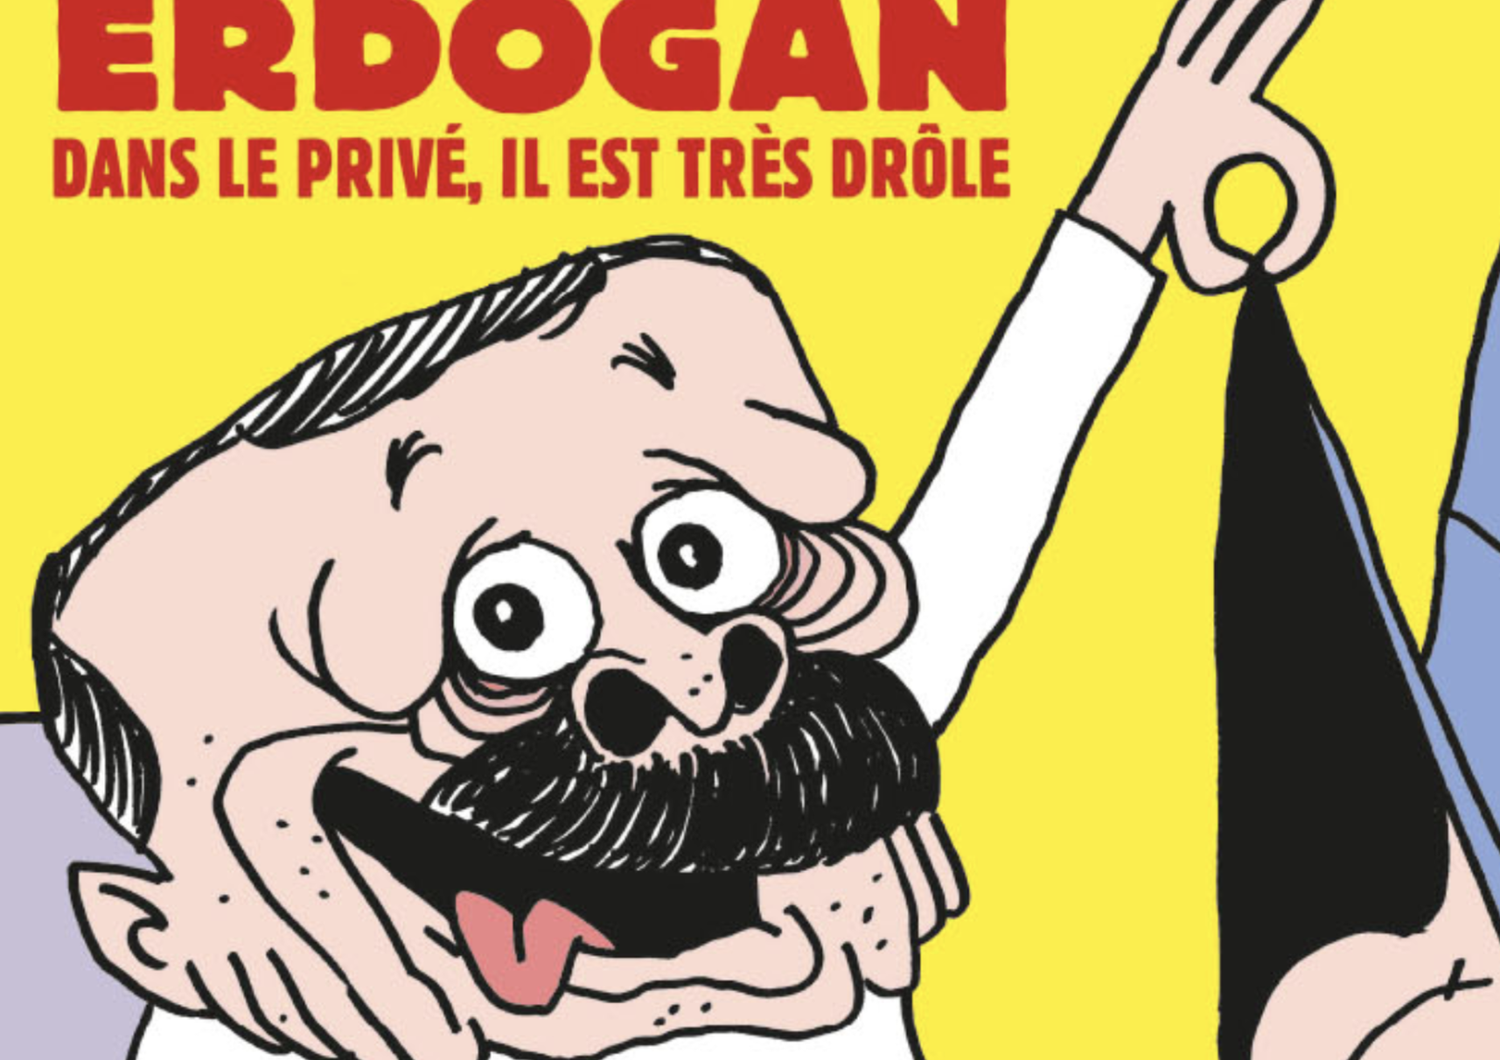 Francia-Islam: provocazione Charlie Hebdo su Erdogan privato